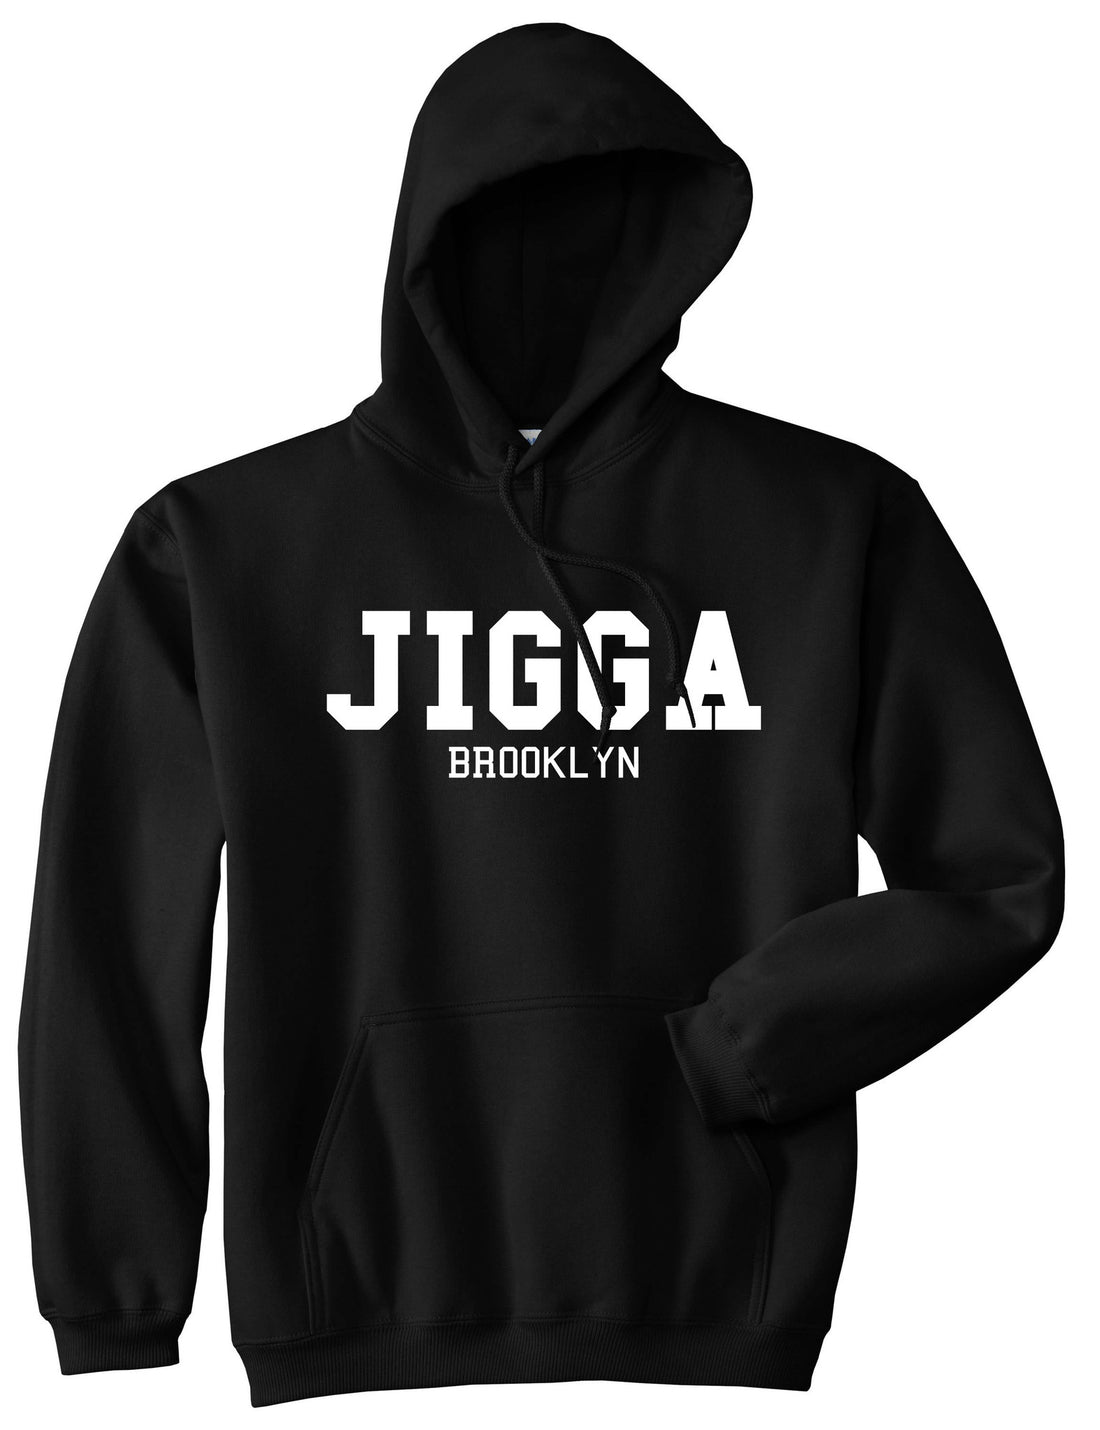 Jigga Brooklyn Pullover Hoodie Hoody in Black by Kings Of NY